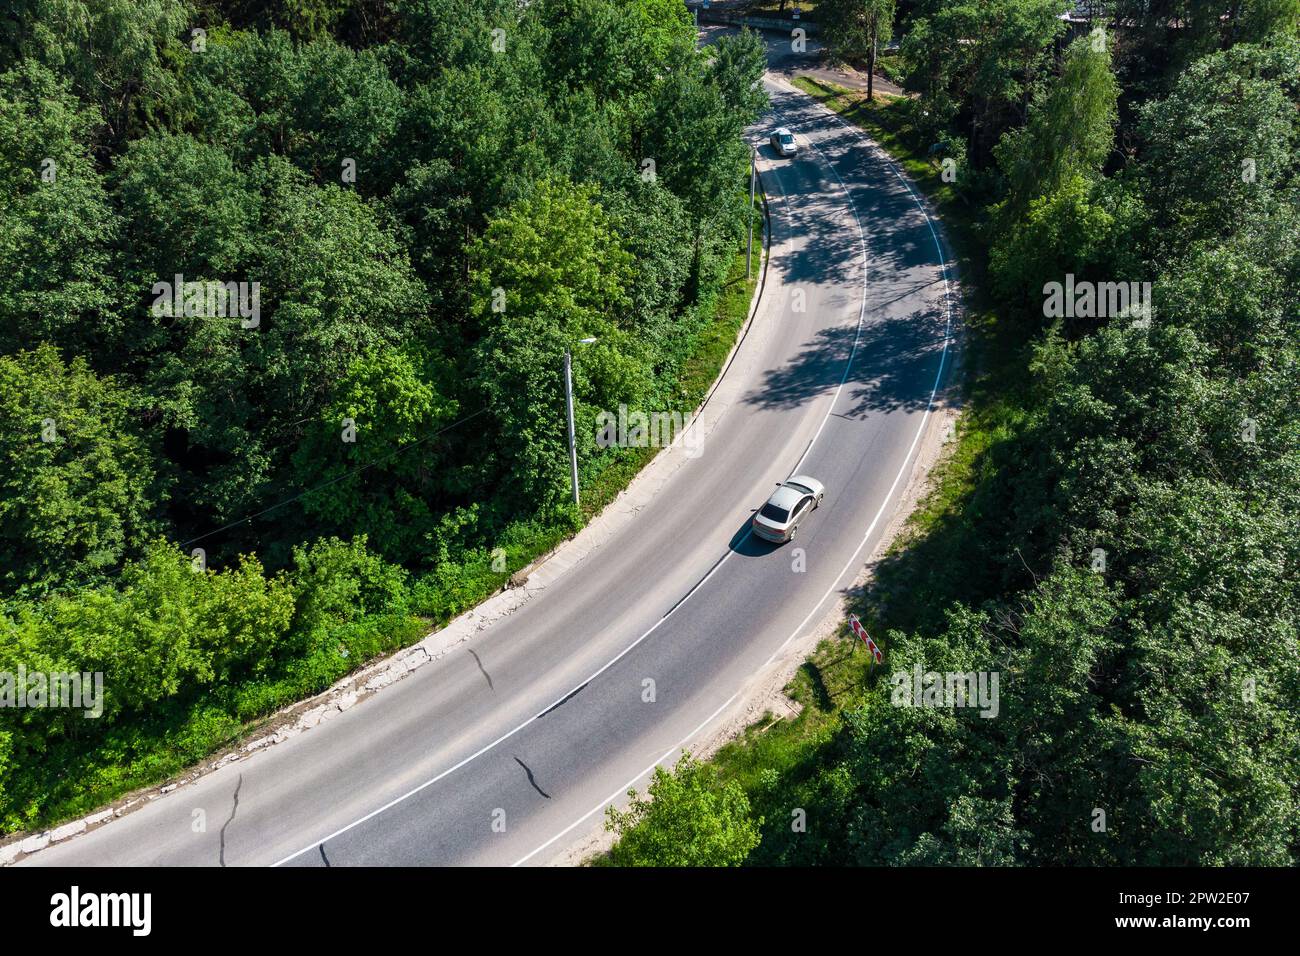 Draufsicht auf die Straße mit einer scharfen Kurve, in der sich das Fahrzeug bewegt Stockfoto